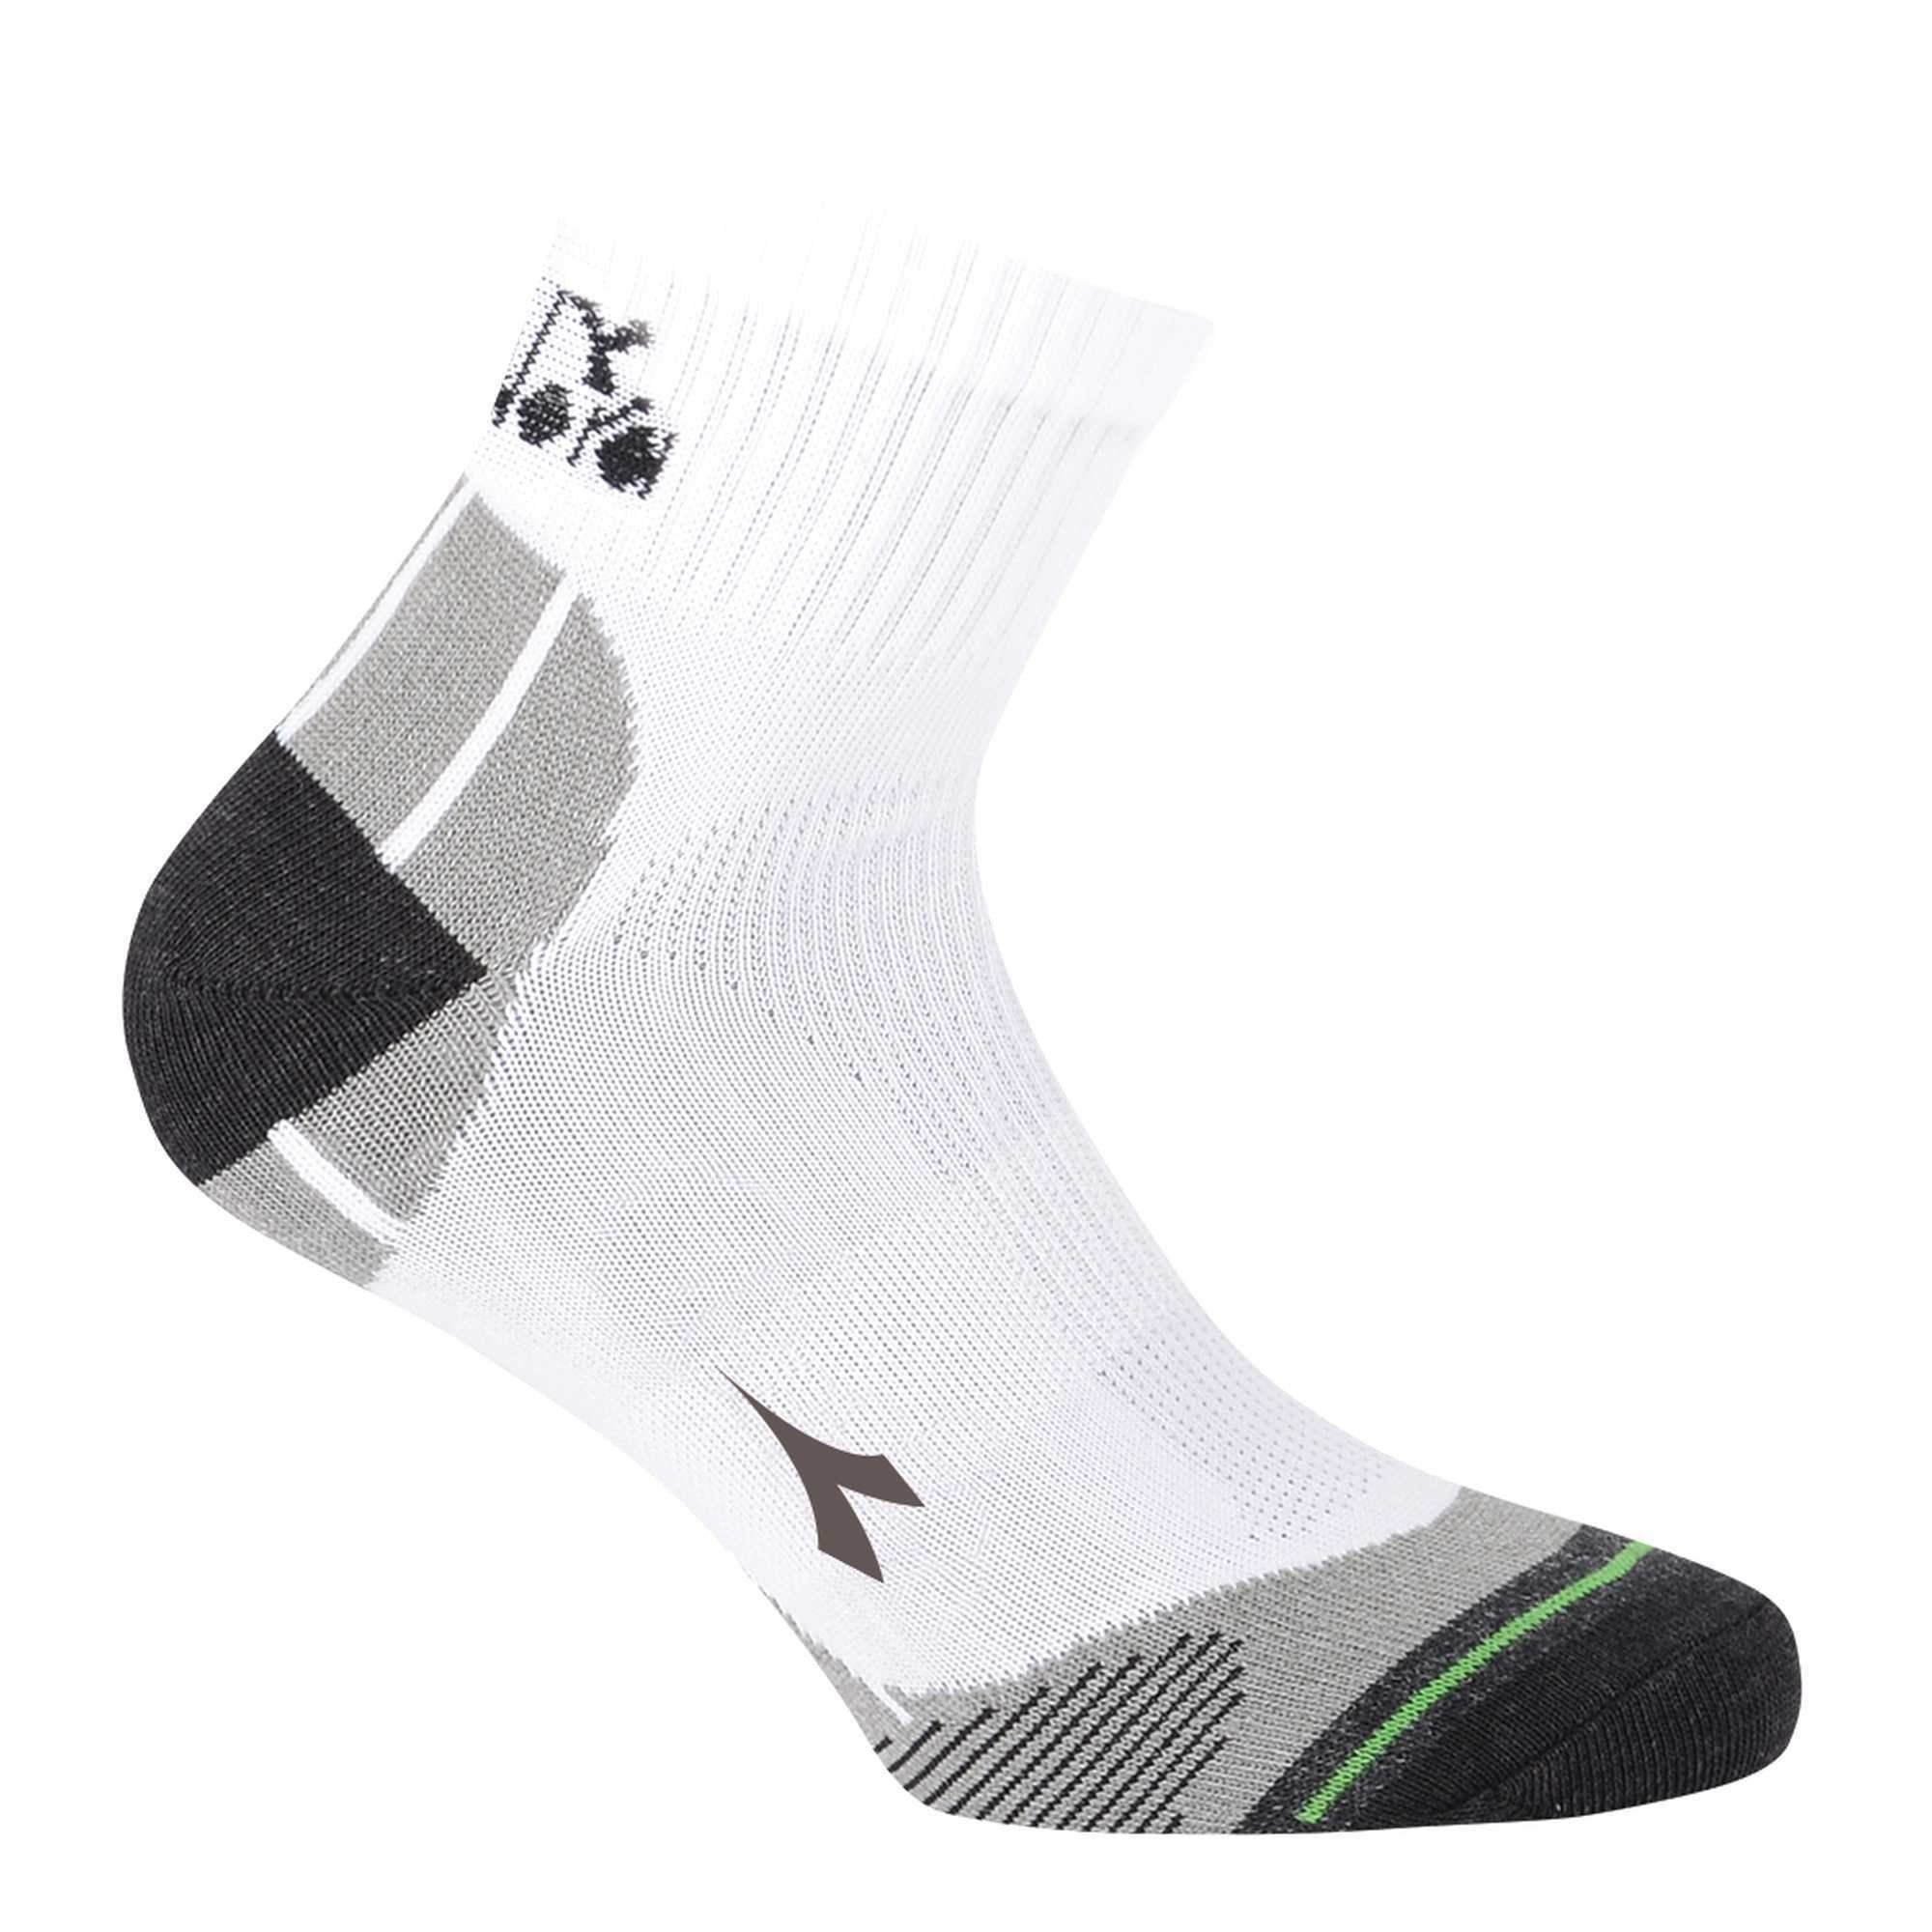 Unisex Sportsocken, - Weiß Quarter 6er Sportsocken Pack Diadora Socken